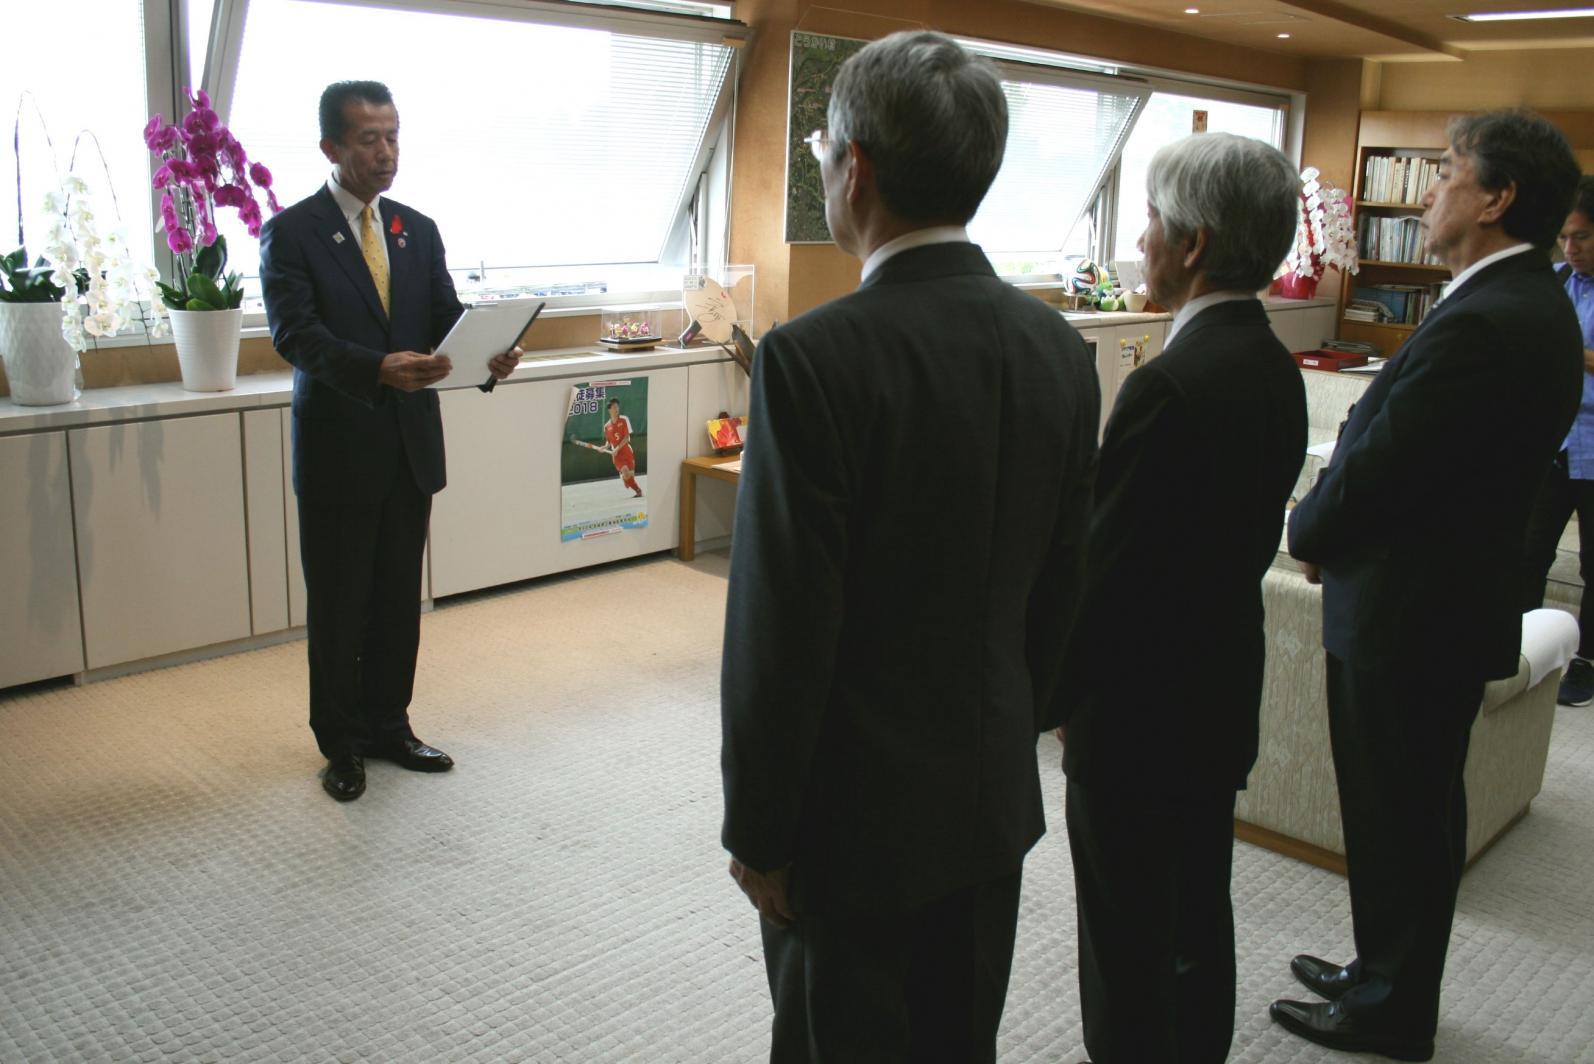 要請文を読み上げる山田村長と後姿の男性3人の写真